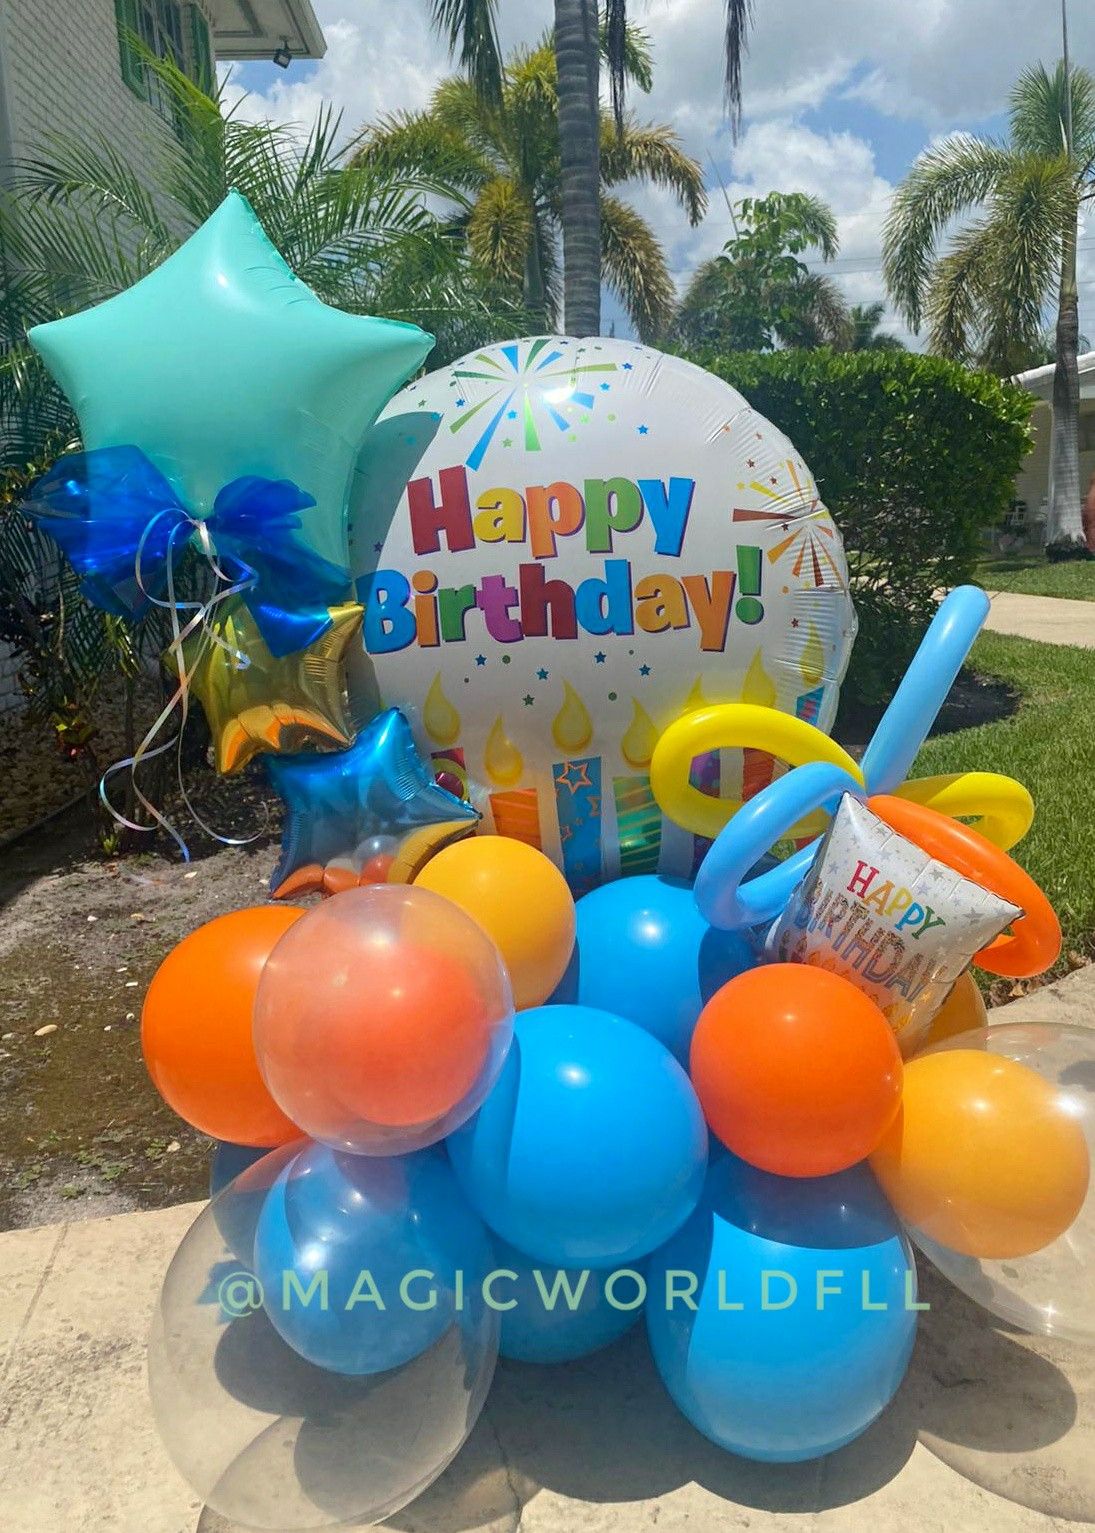 Happy birthday gift balloons Bouquets / Regalo de feliz cumpleaños globos personalizados fiesta party